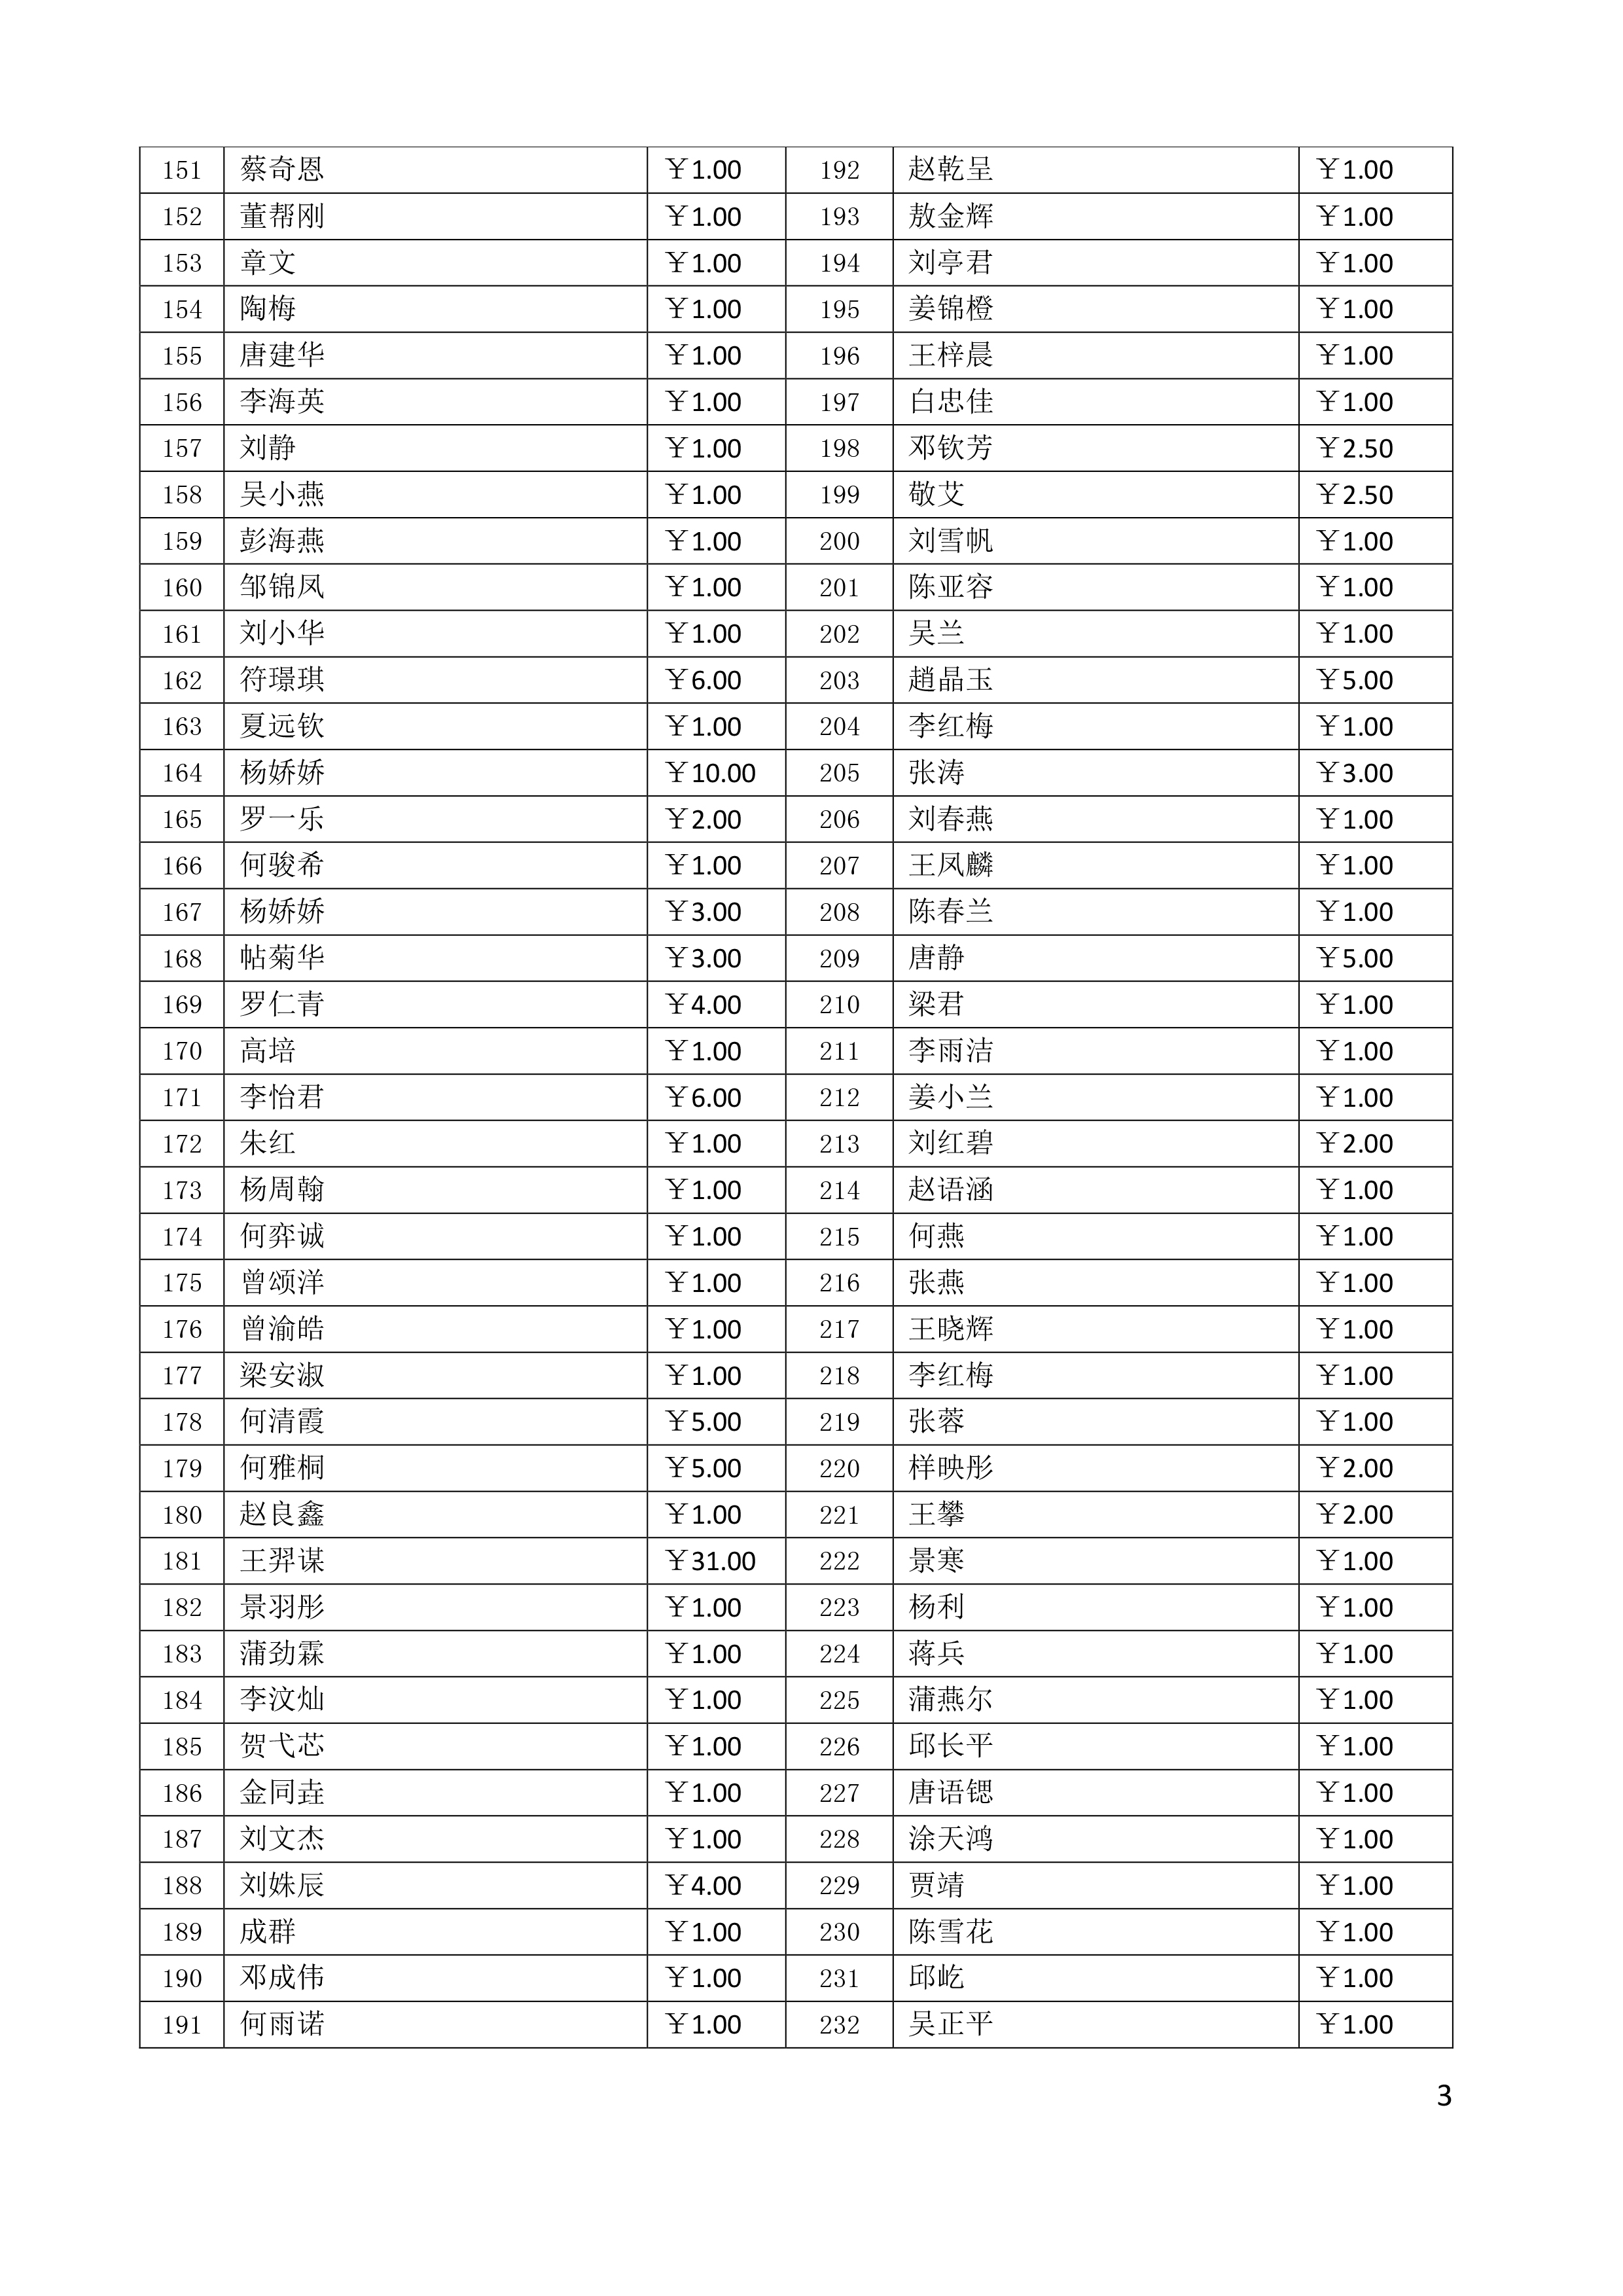 第012期-2022年4月20日太平绵支359人次春雨助残捐款情况公示-3.jpg